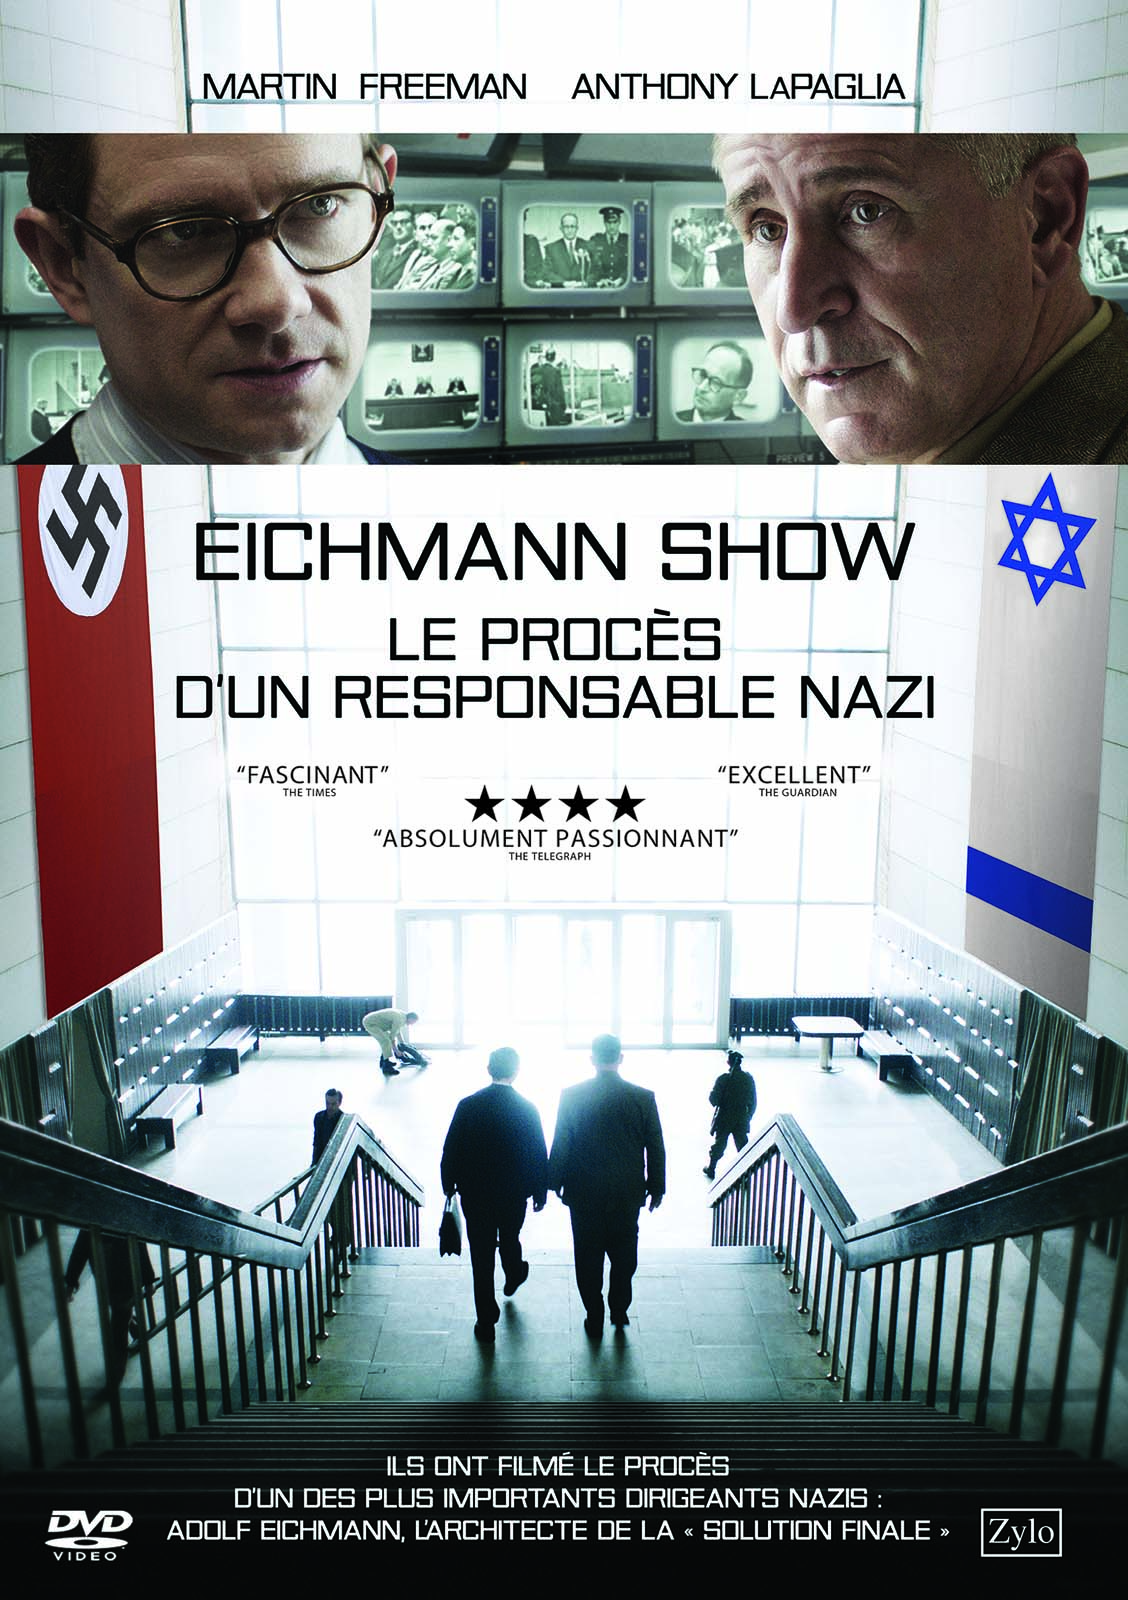 The Eichmann Show #10